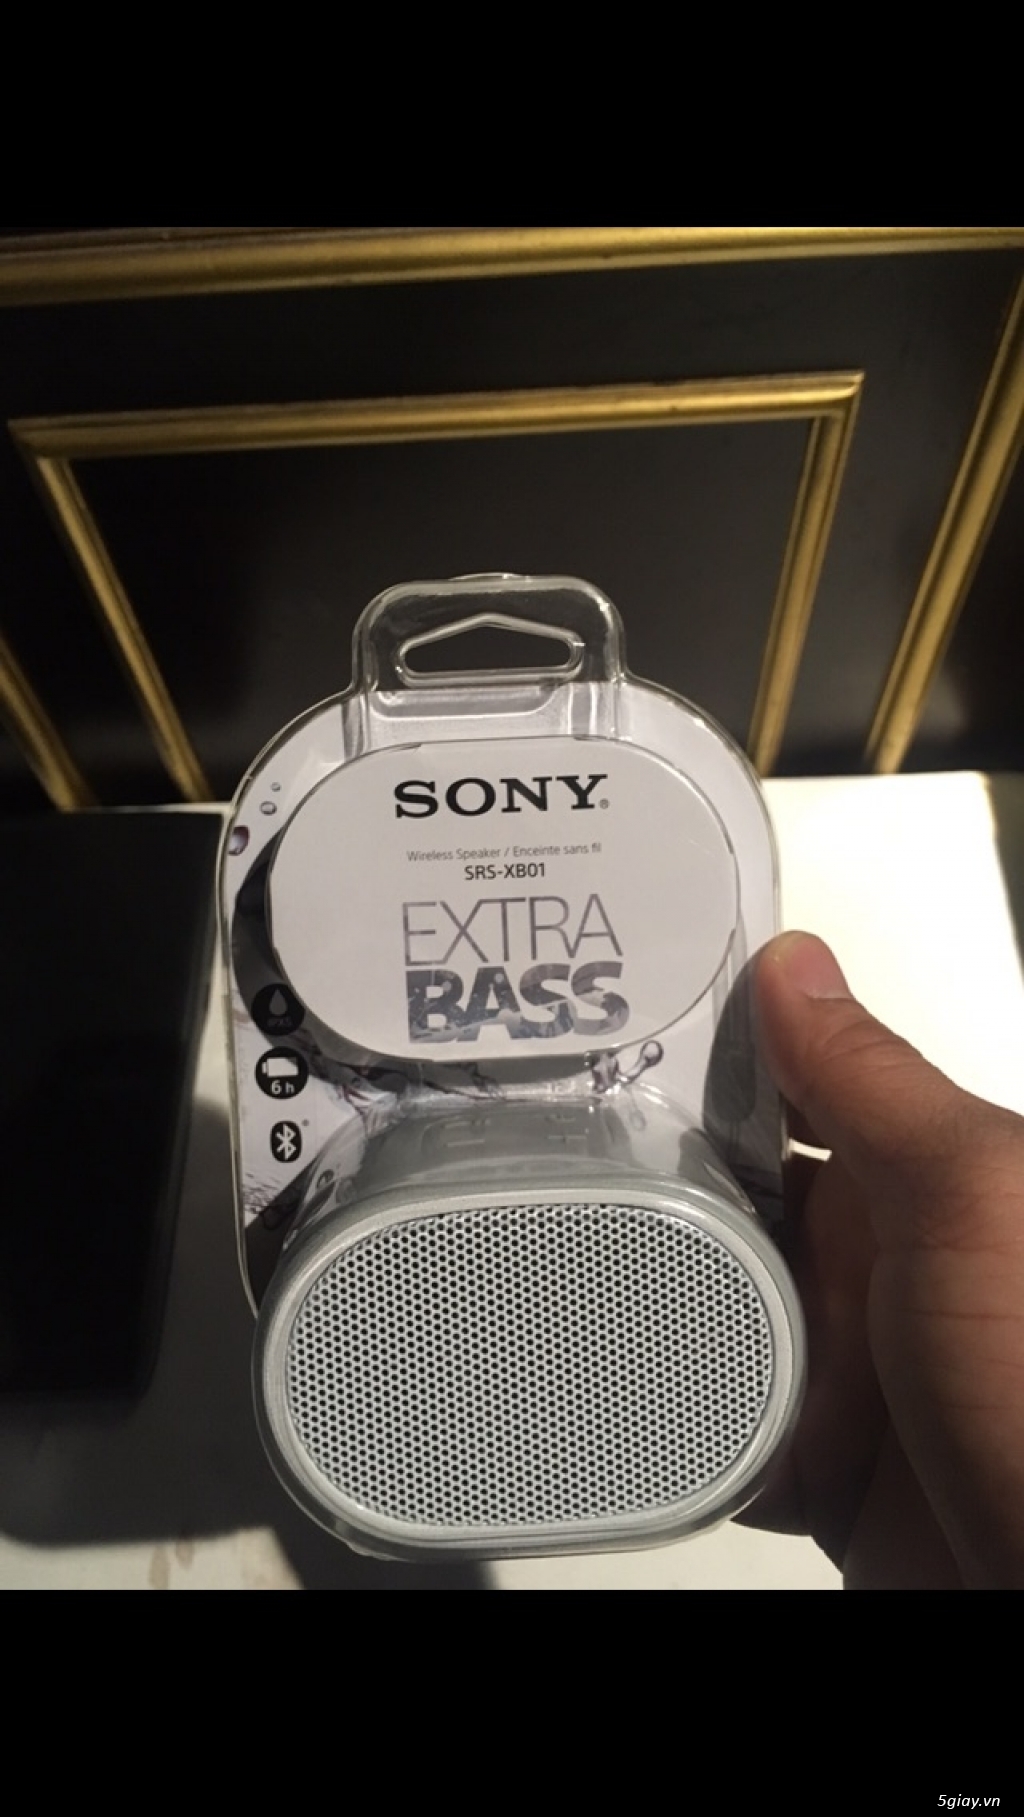 Loa Sony Xb01